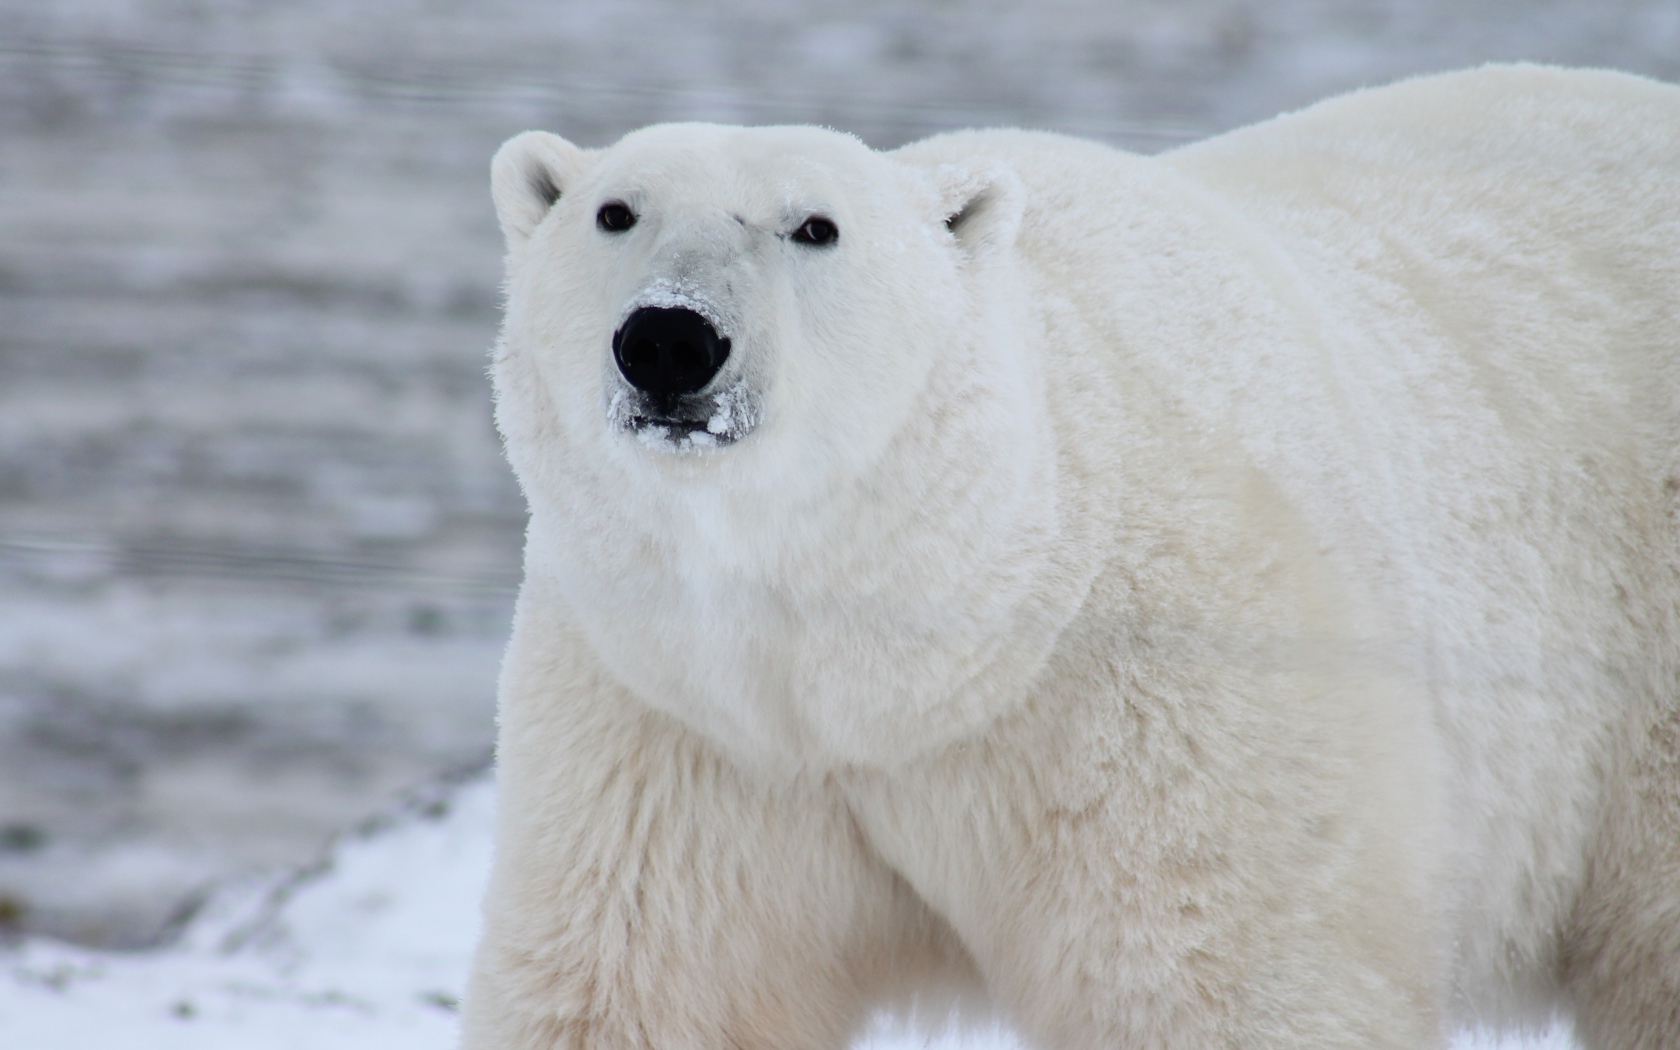 Big polar bear in the snow